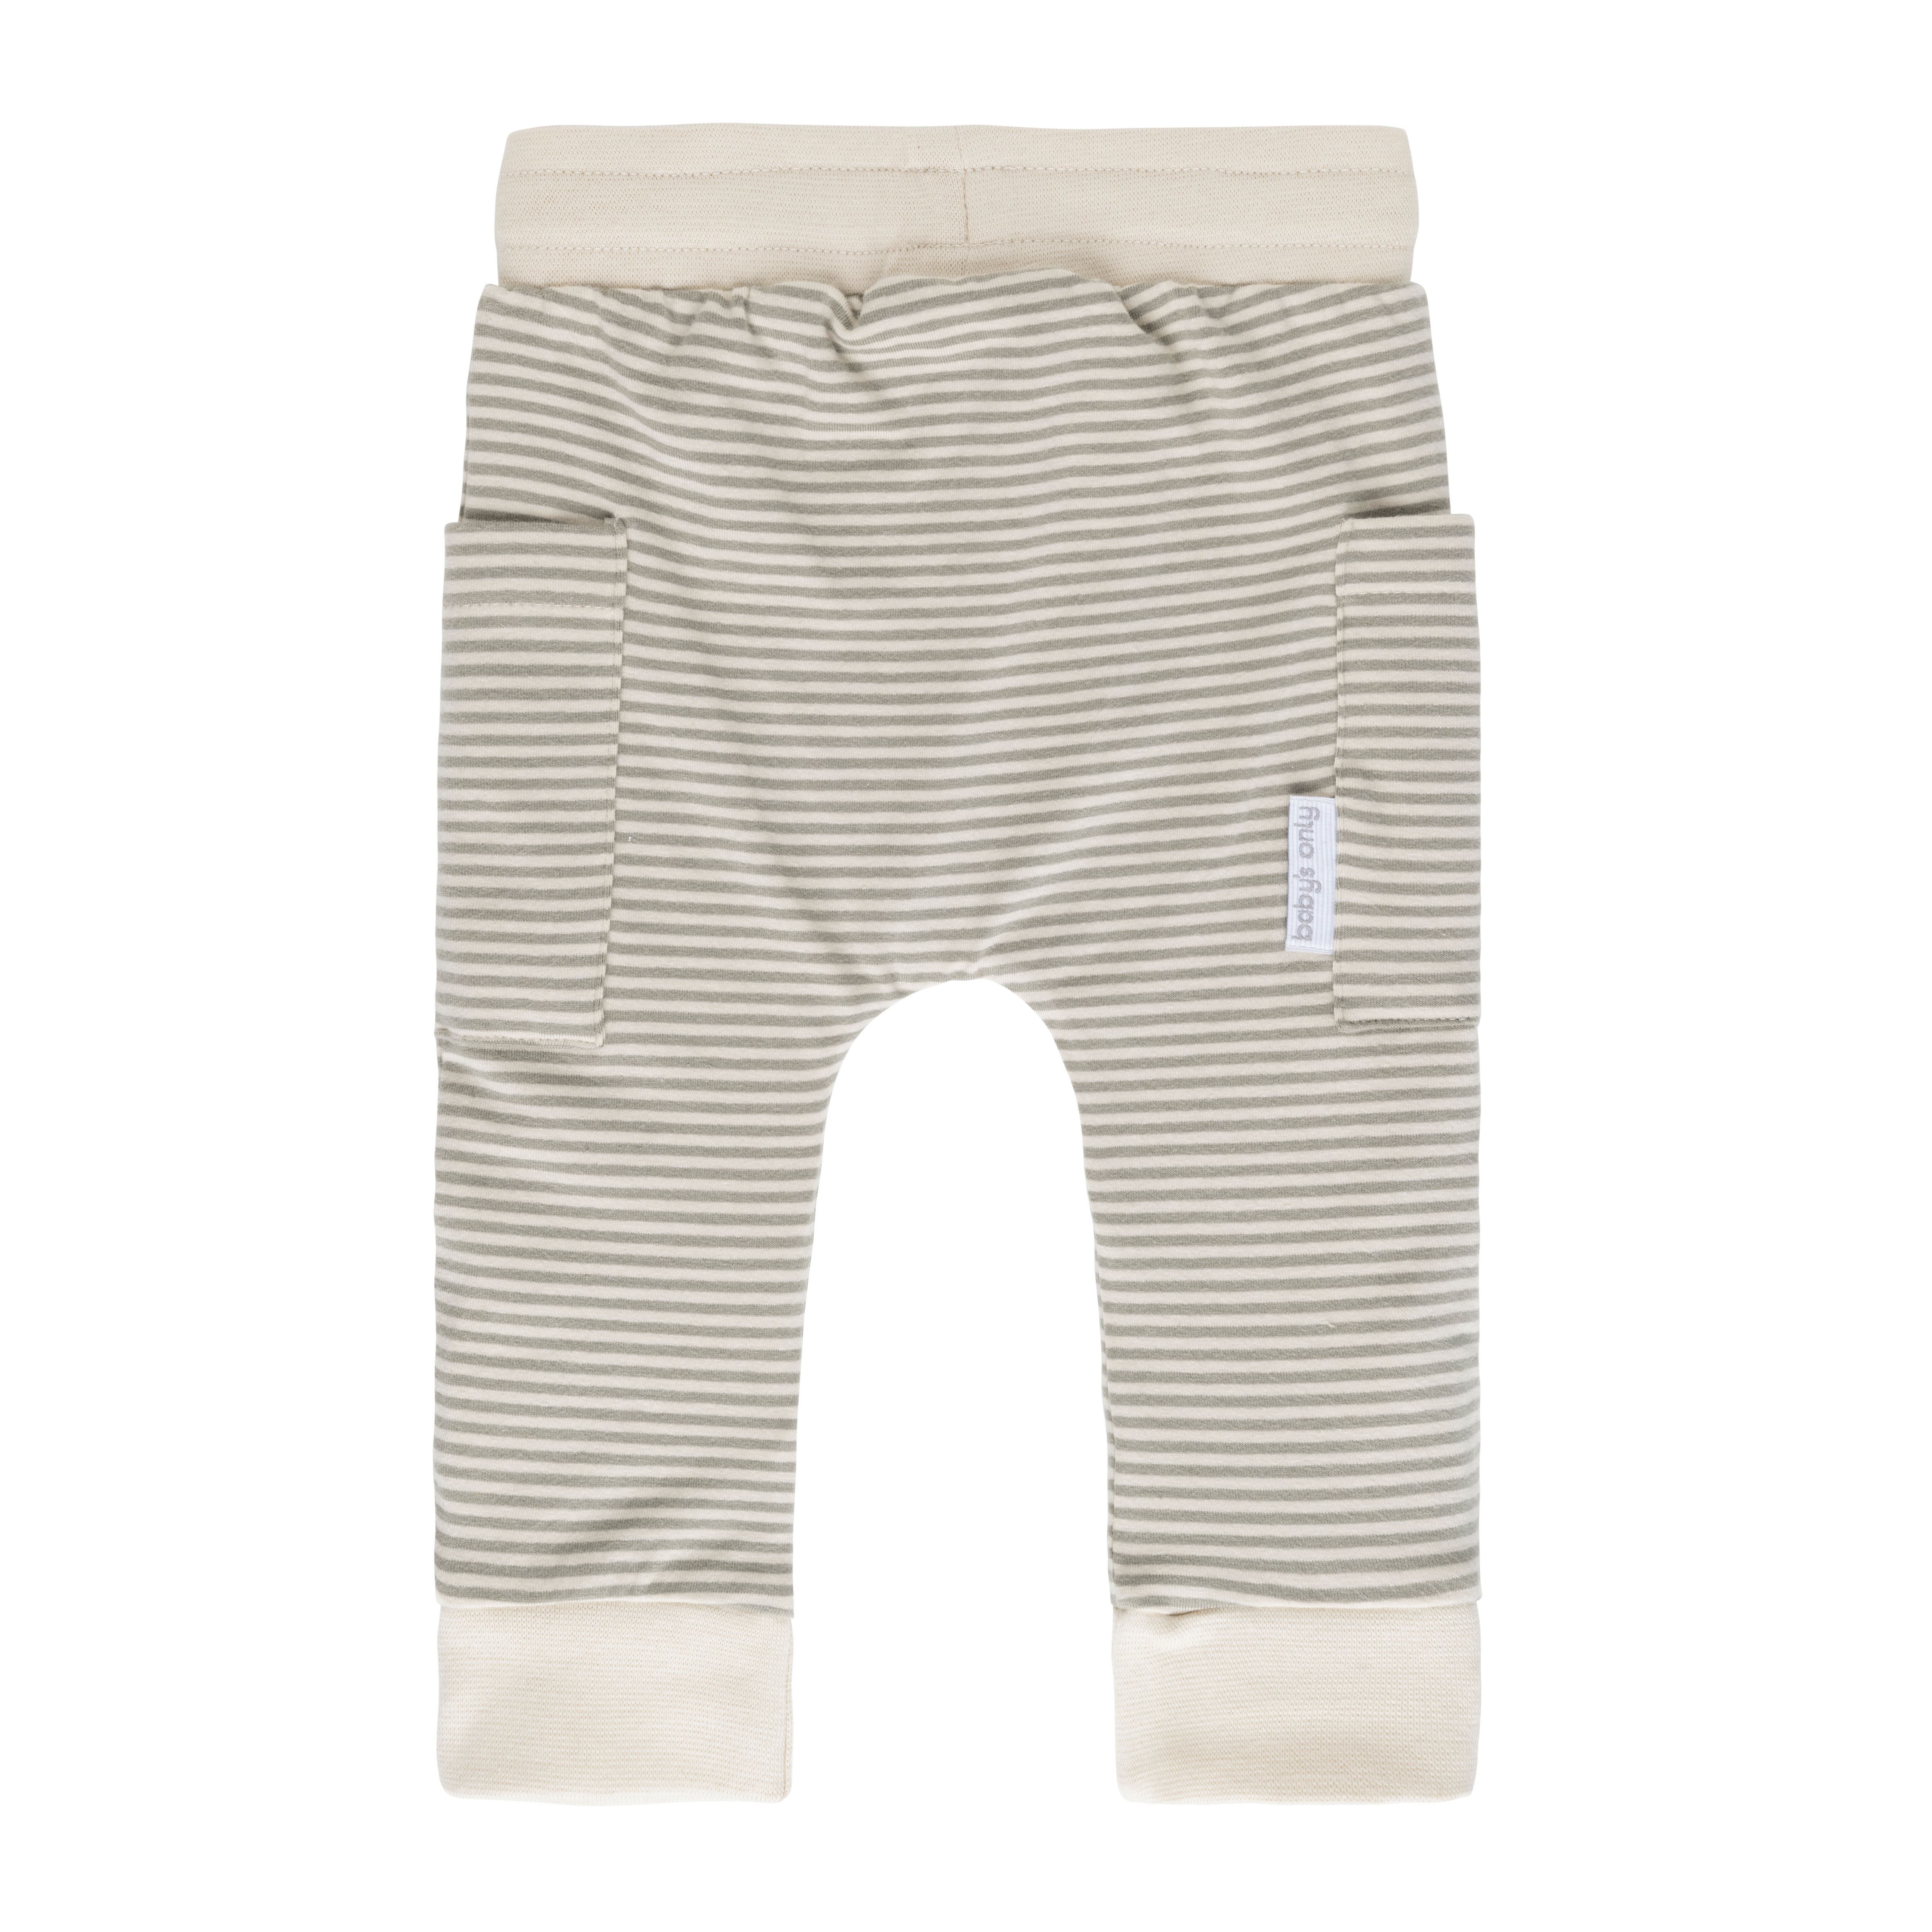 Pants Stripe urban green - 68